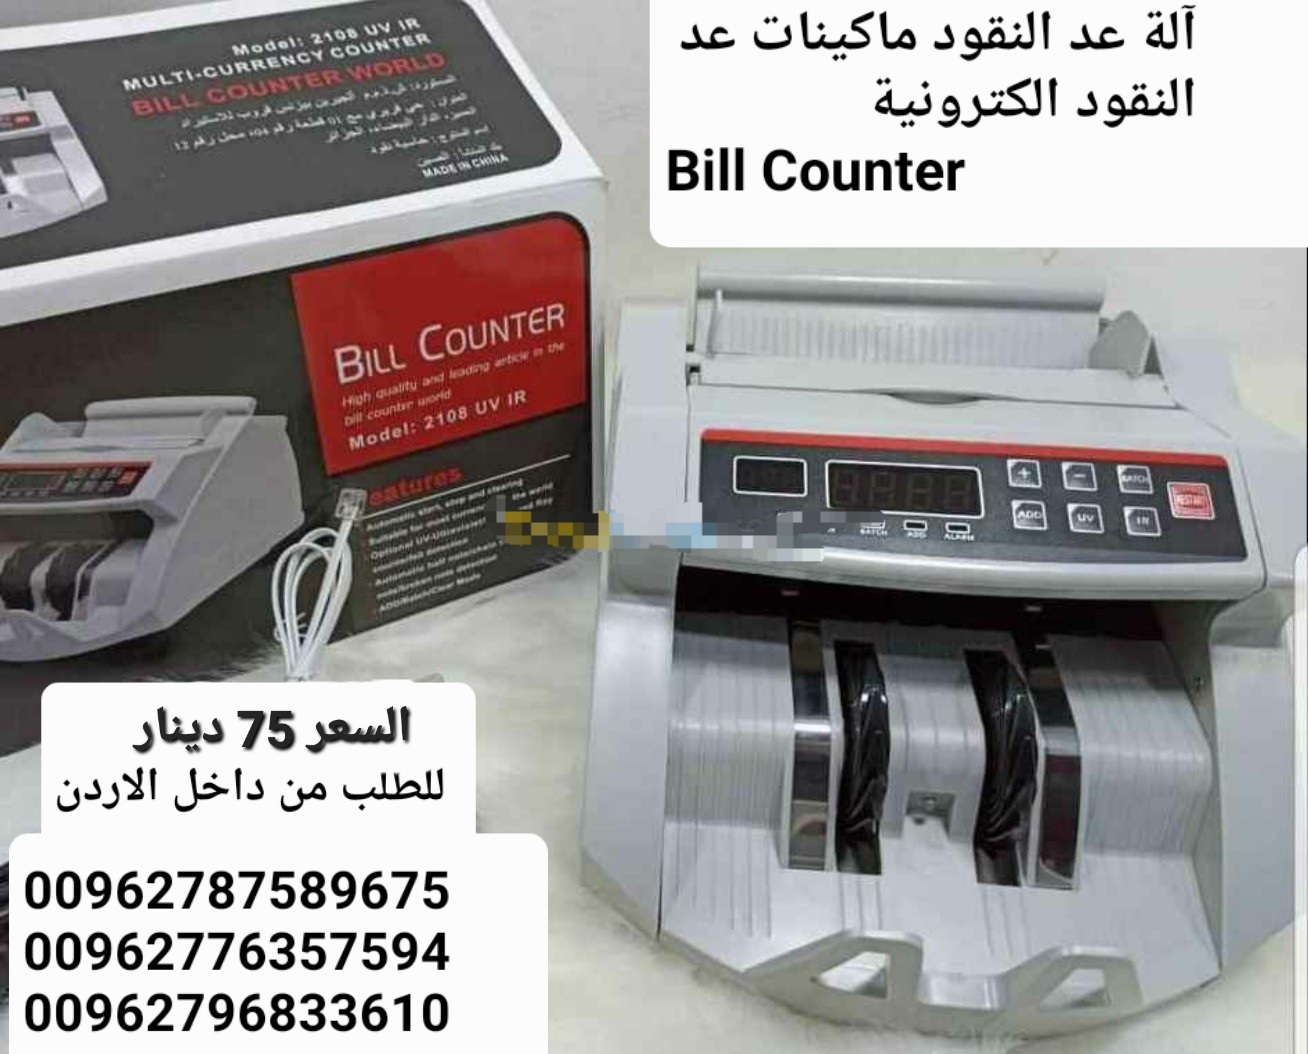 تكنولوجيا-قابلة-للإرتداءماكينة عد النقود عرض خاص في الاردن بيع الة عد النقود Bill counter...